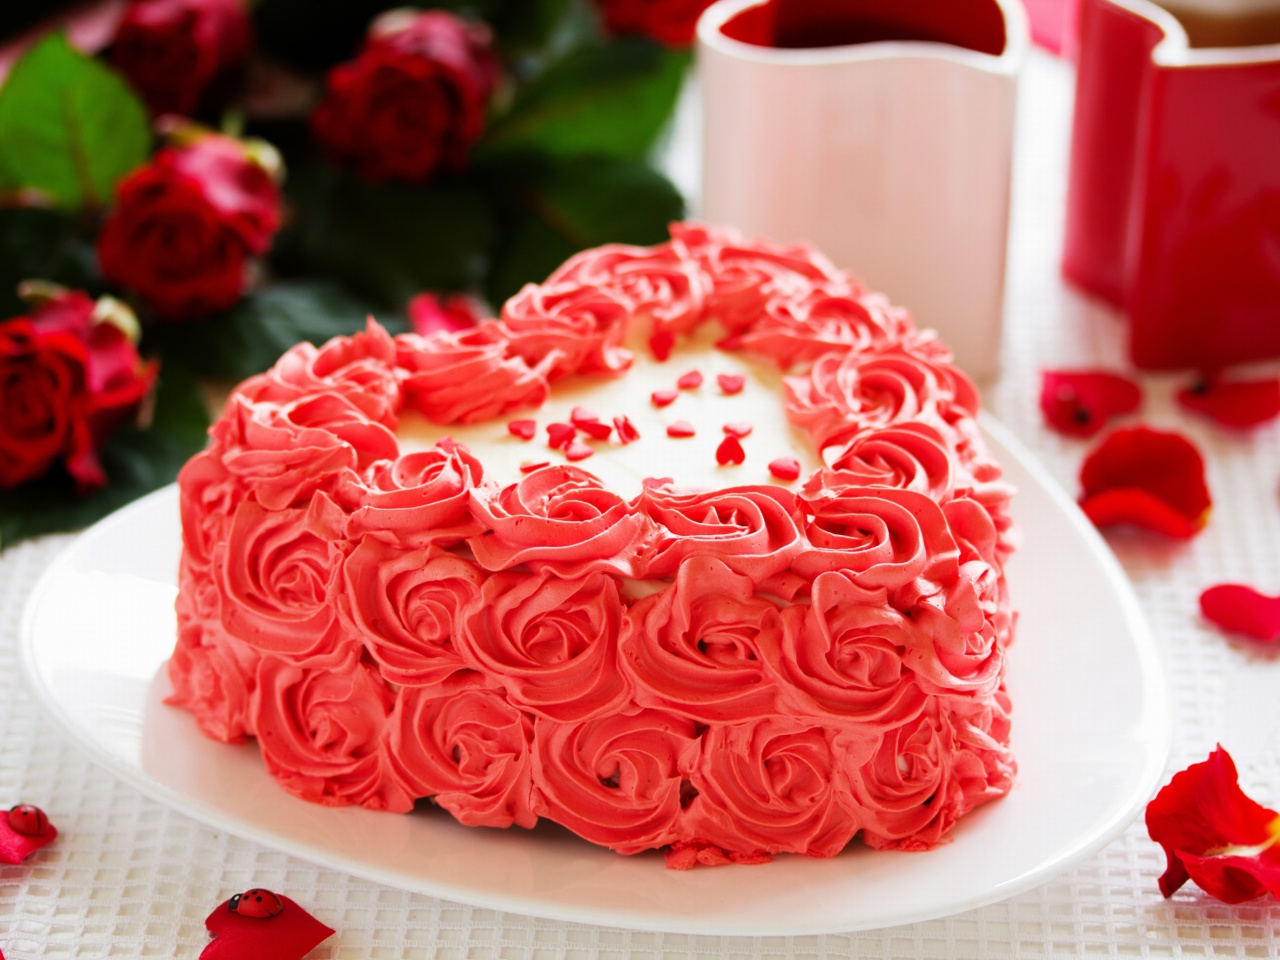 Das Sweet Red Heart Cake Wallpaper 1280x960